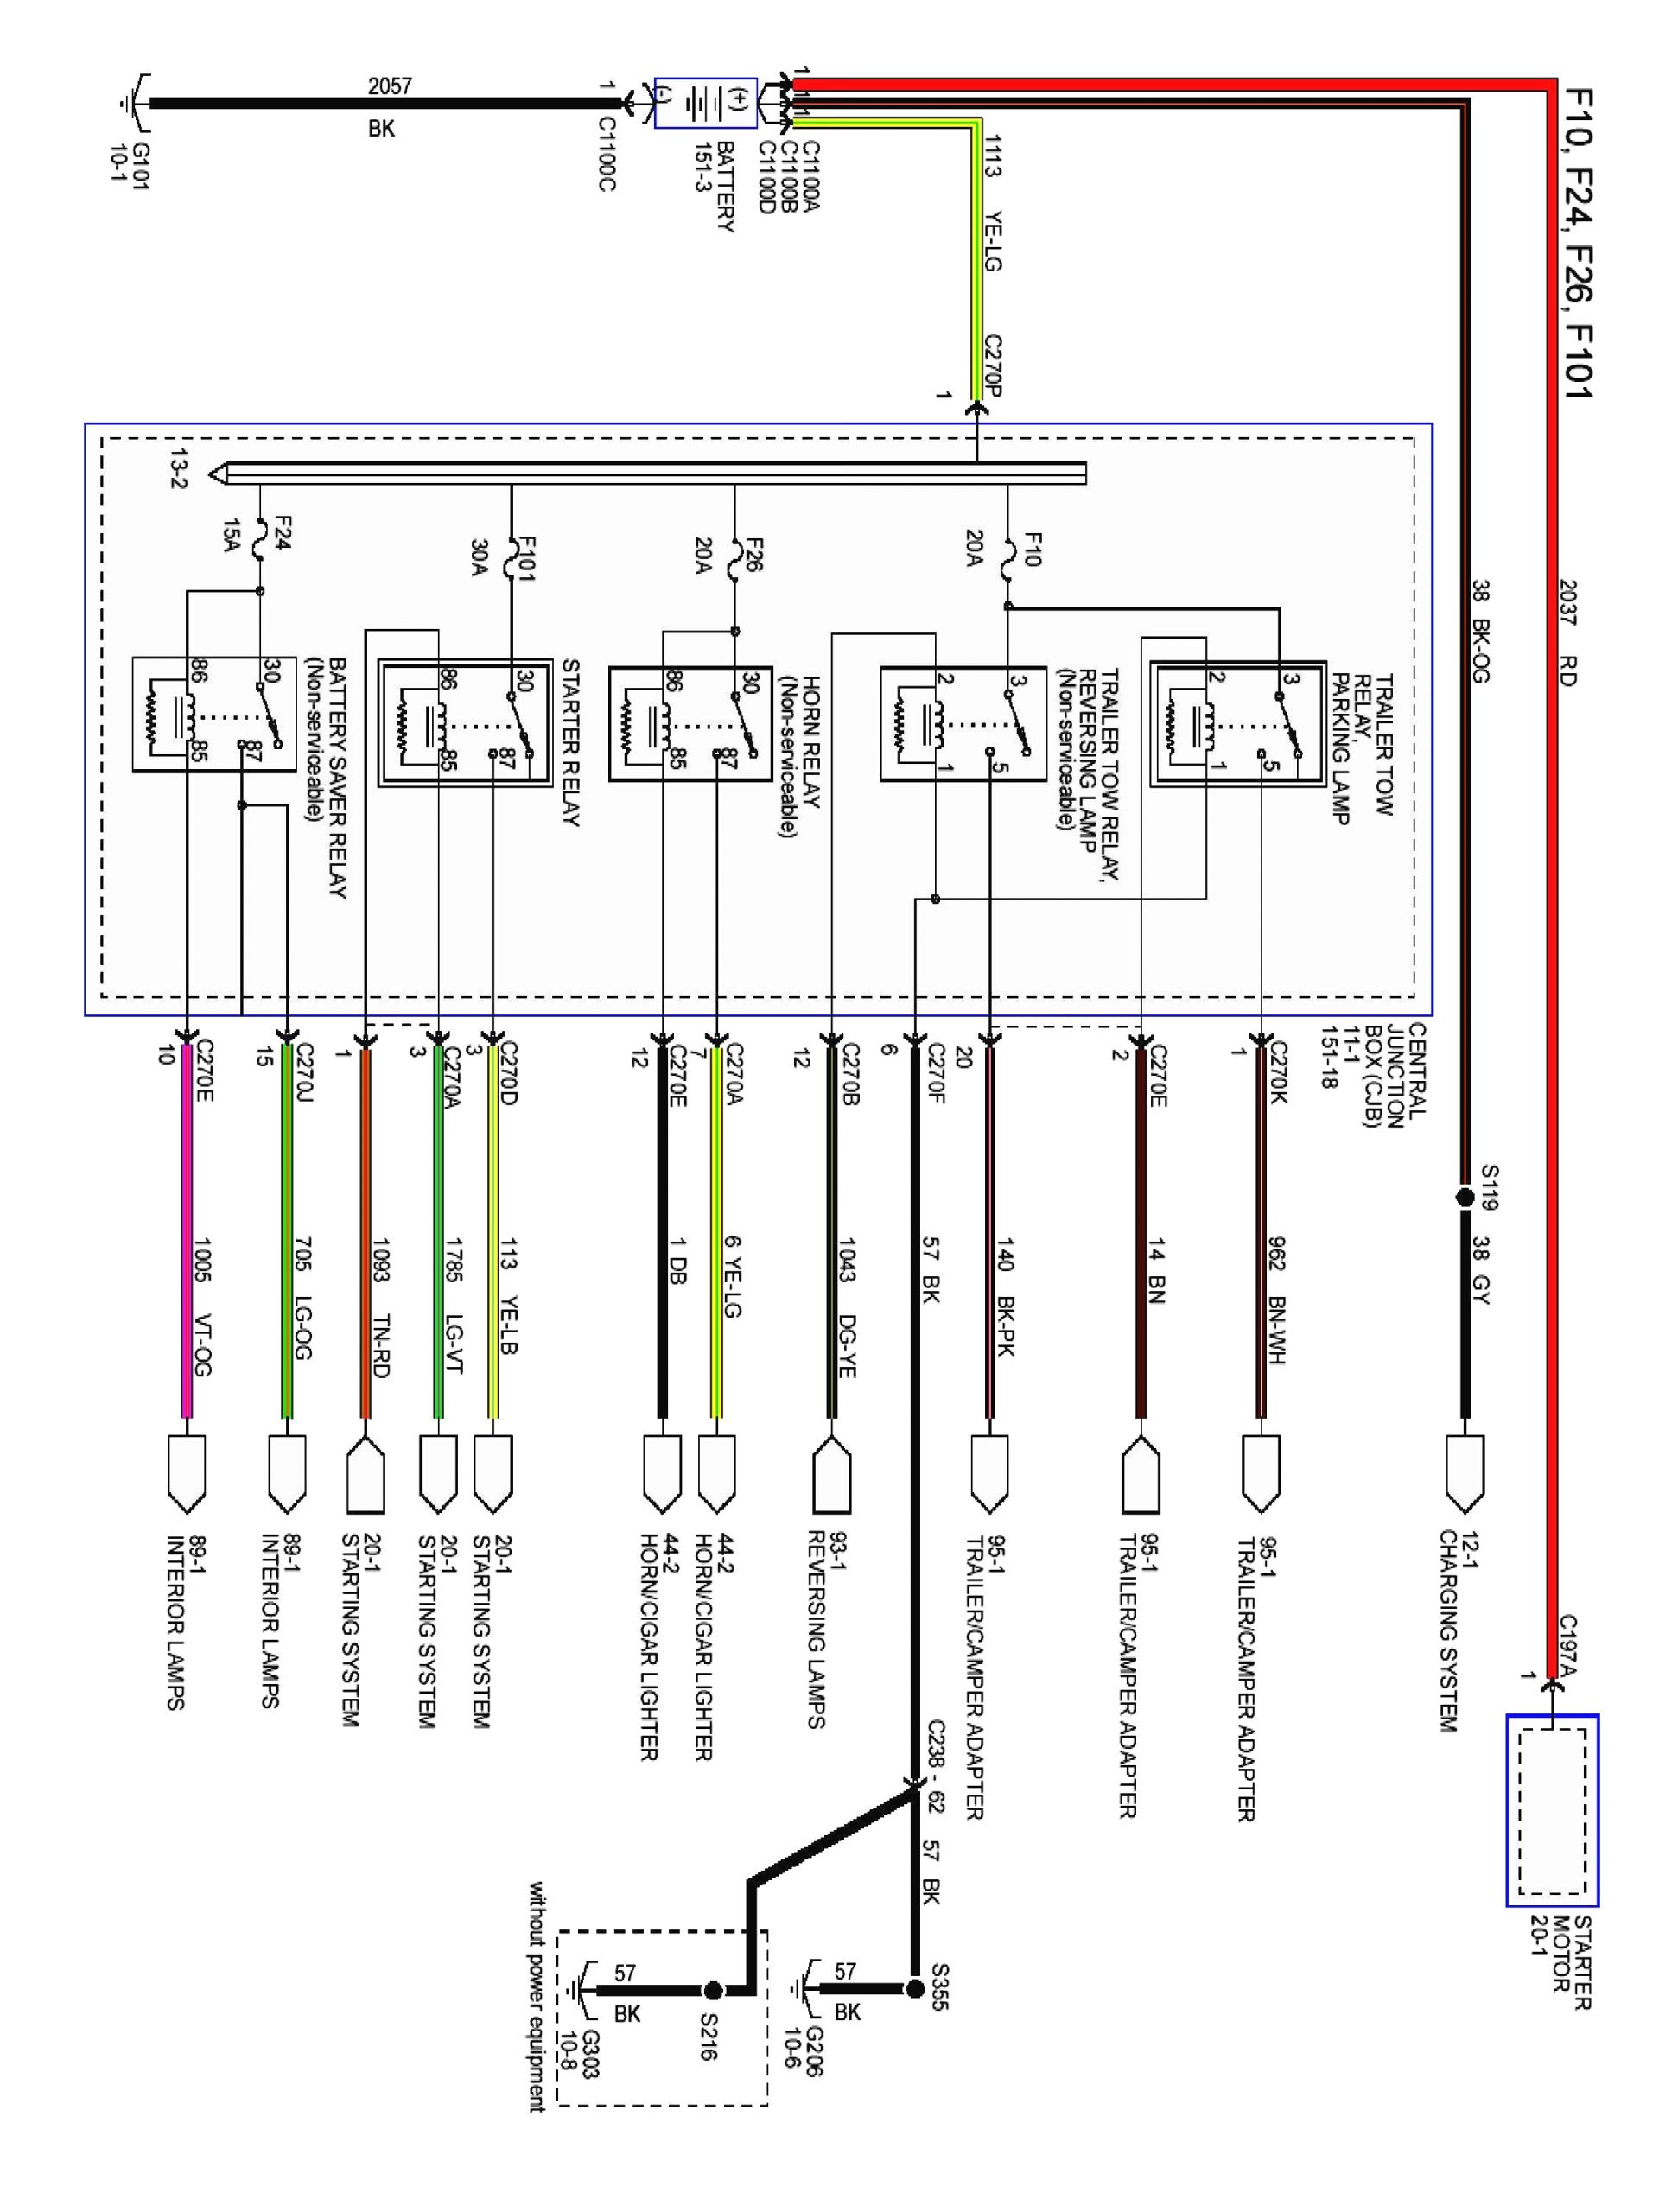 2002 taurus wiring diagram 2012 ford taurus wiring diagram wiring diagram blog of 2002 taurus wiring diagram jpg